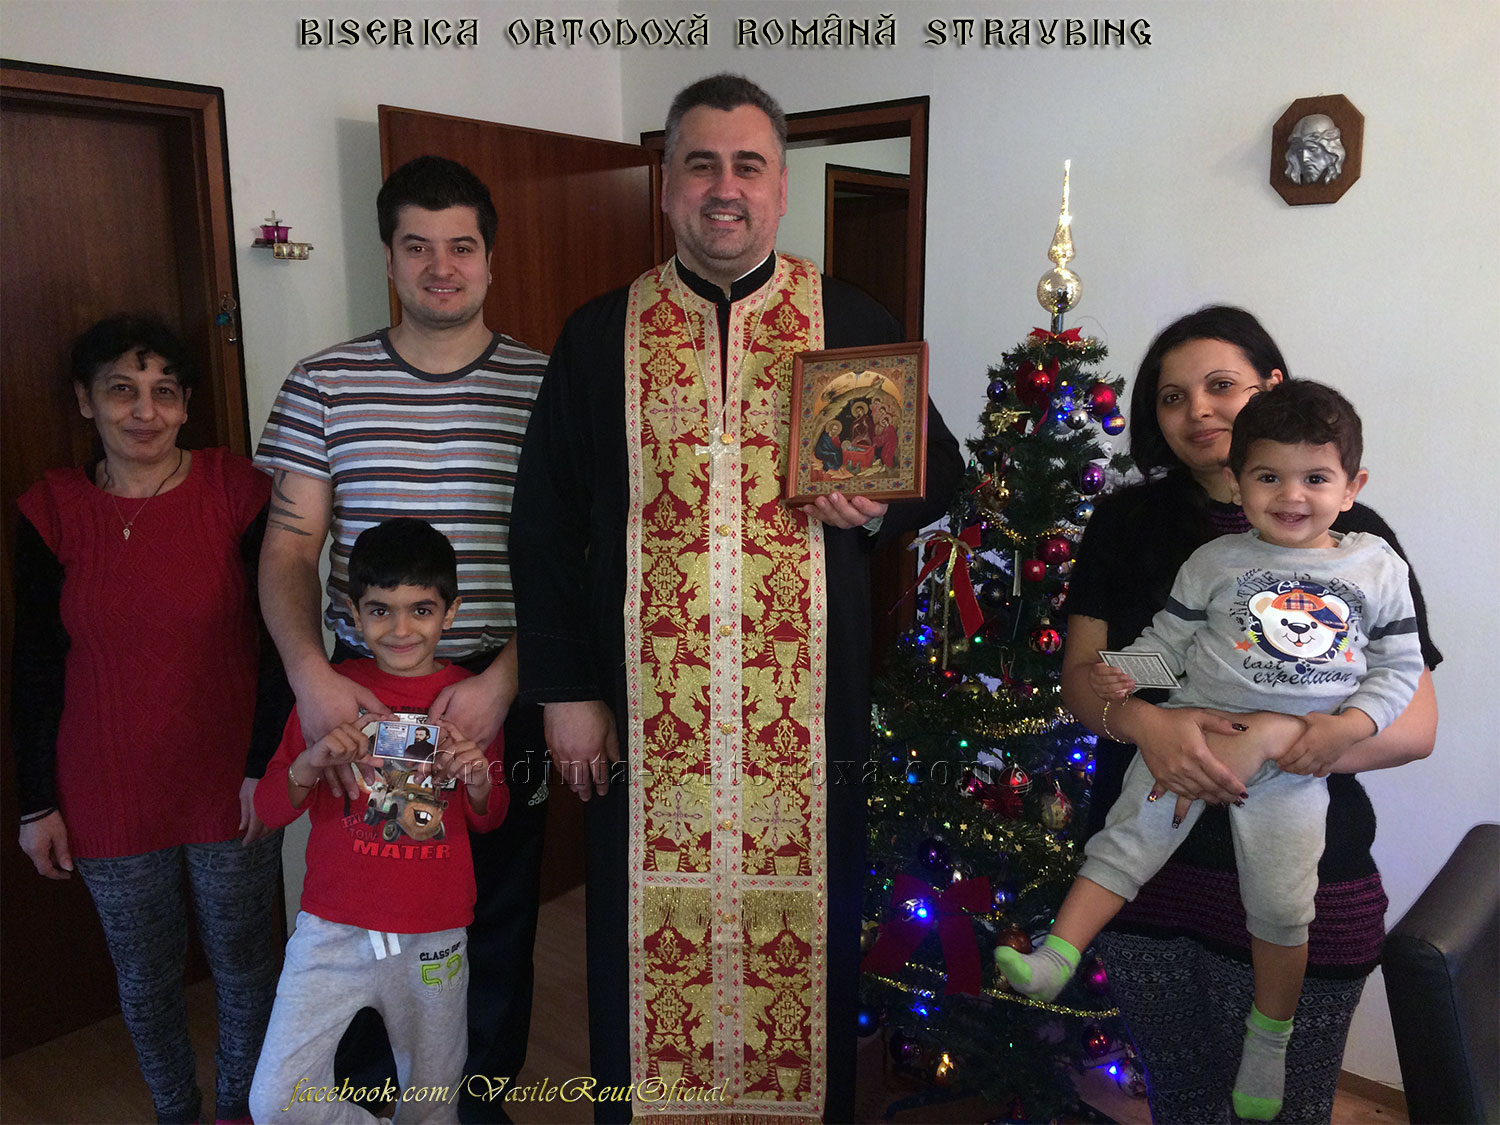 Bucuria de a păstra Credinţa şi Tradiţia Strămoşească: În vizită pastorală cu Icoana Naşterii Domnului la o familie de credincioşi din Straubing